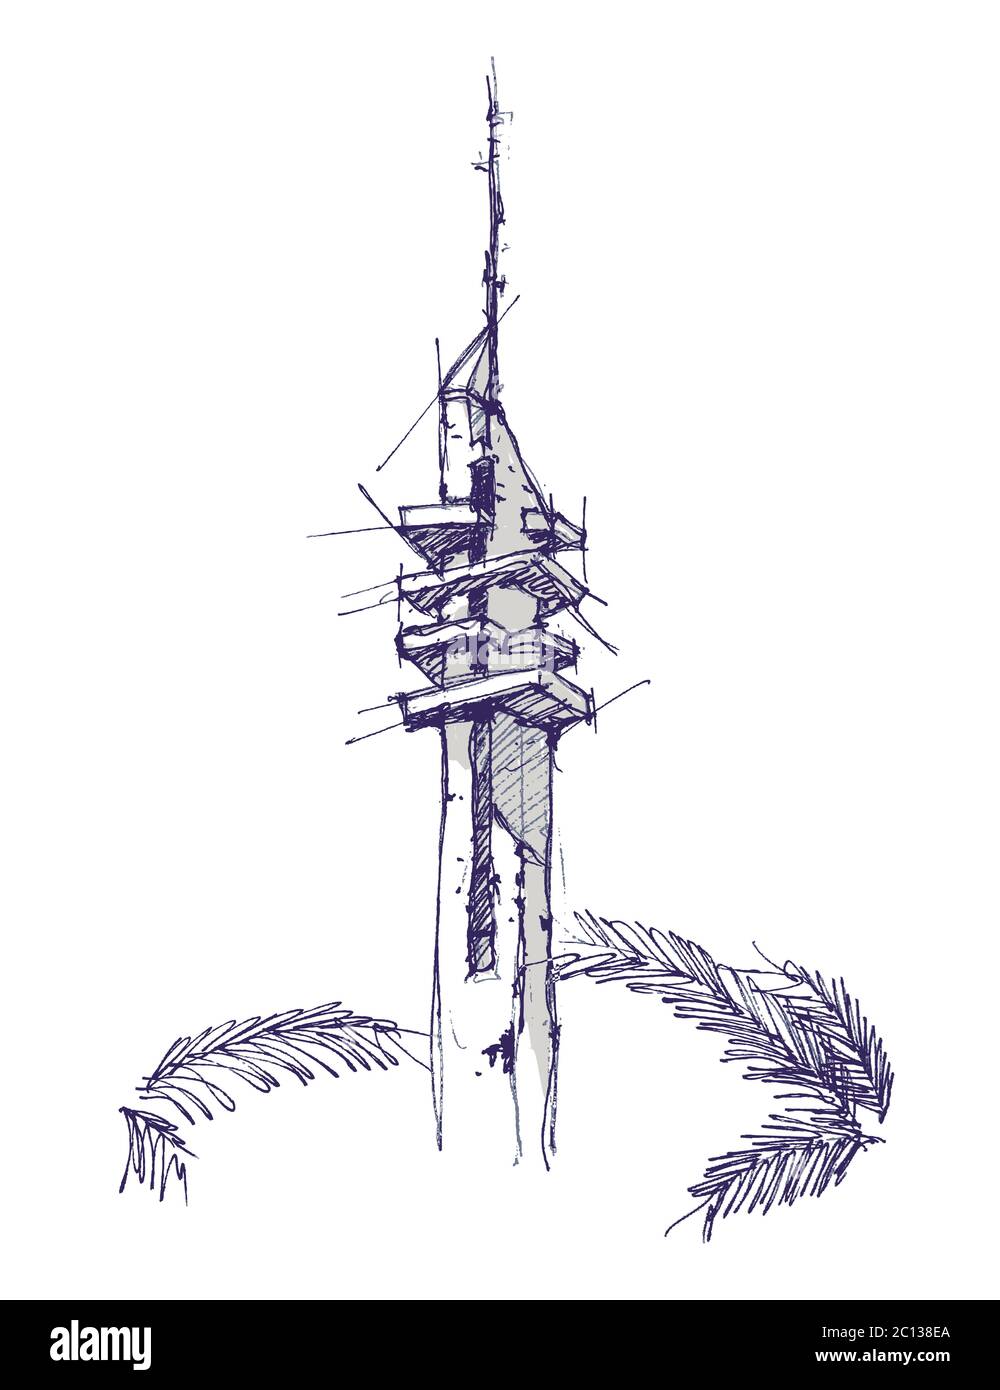 Handgezeichnete Skizzendarstellung des Marganit-Turms, einem Wahrzeichen in Tel Aviv, Israel. Stock Vektor